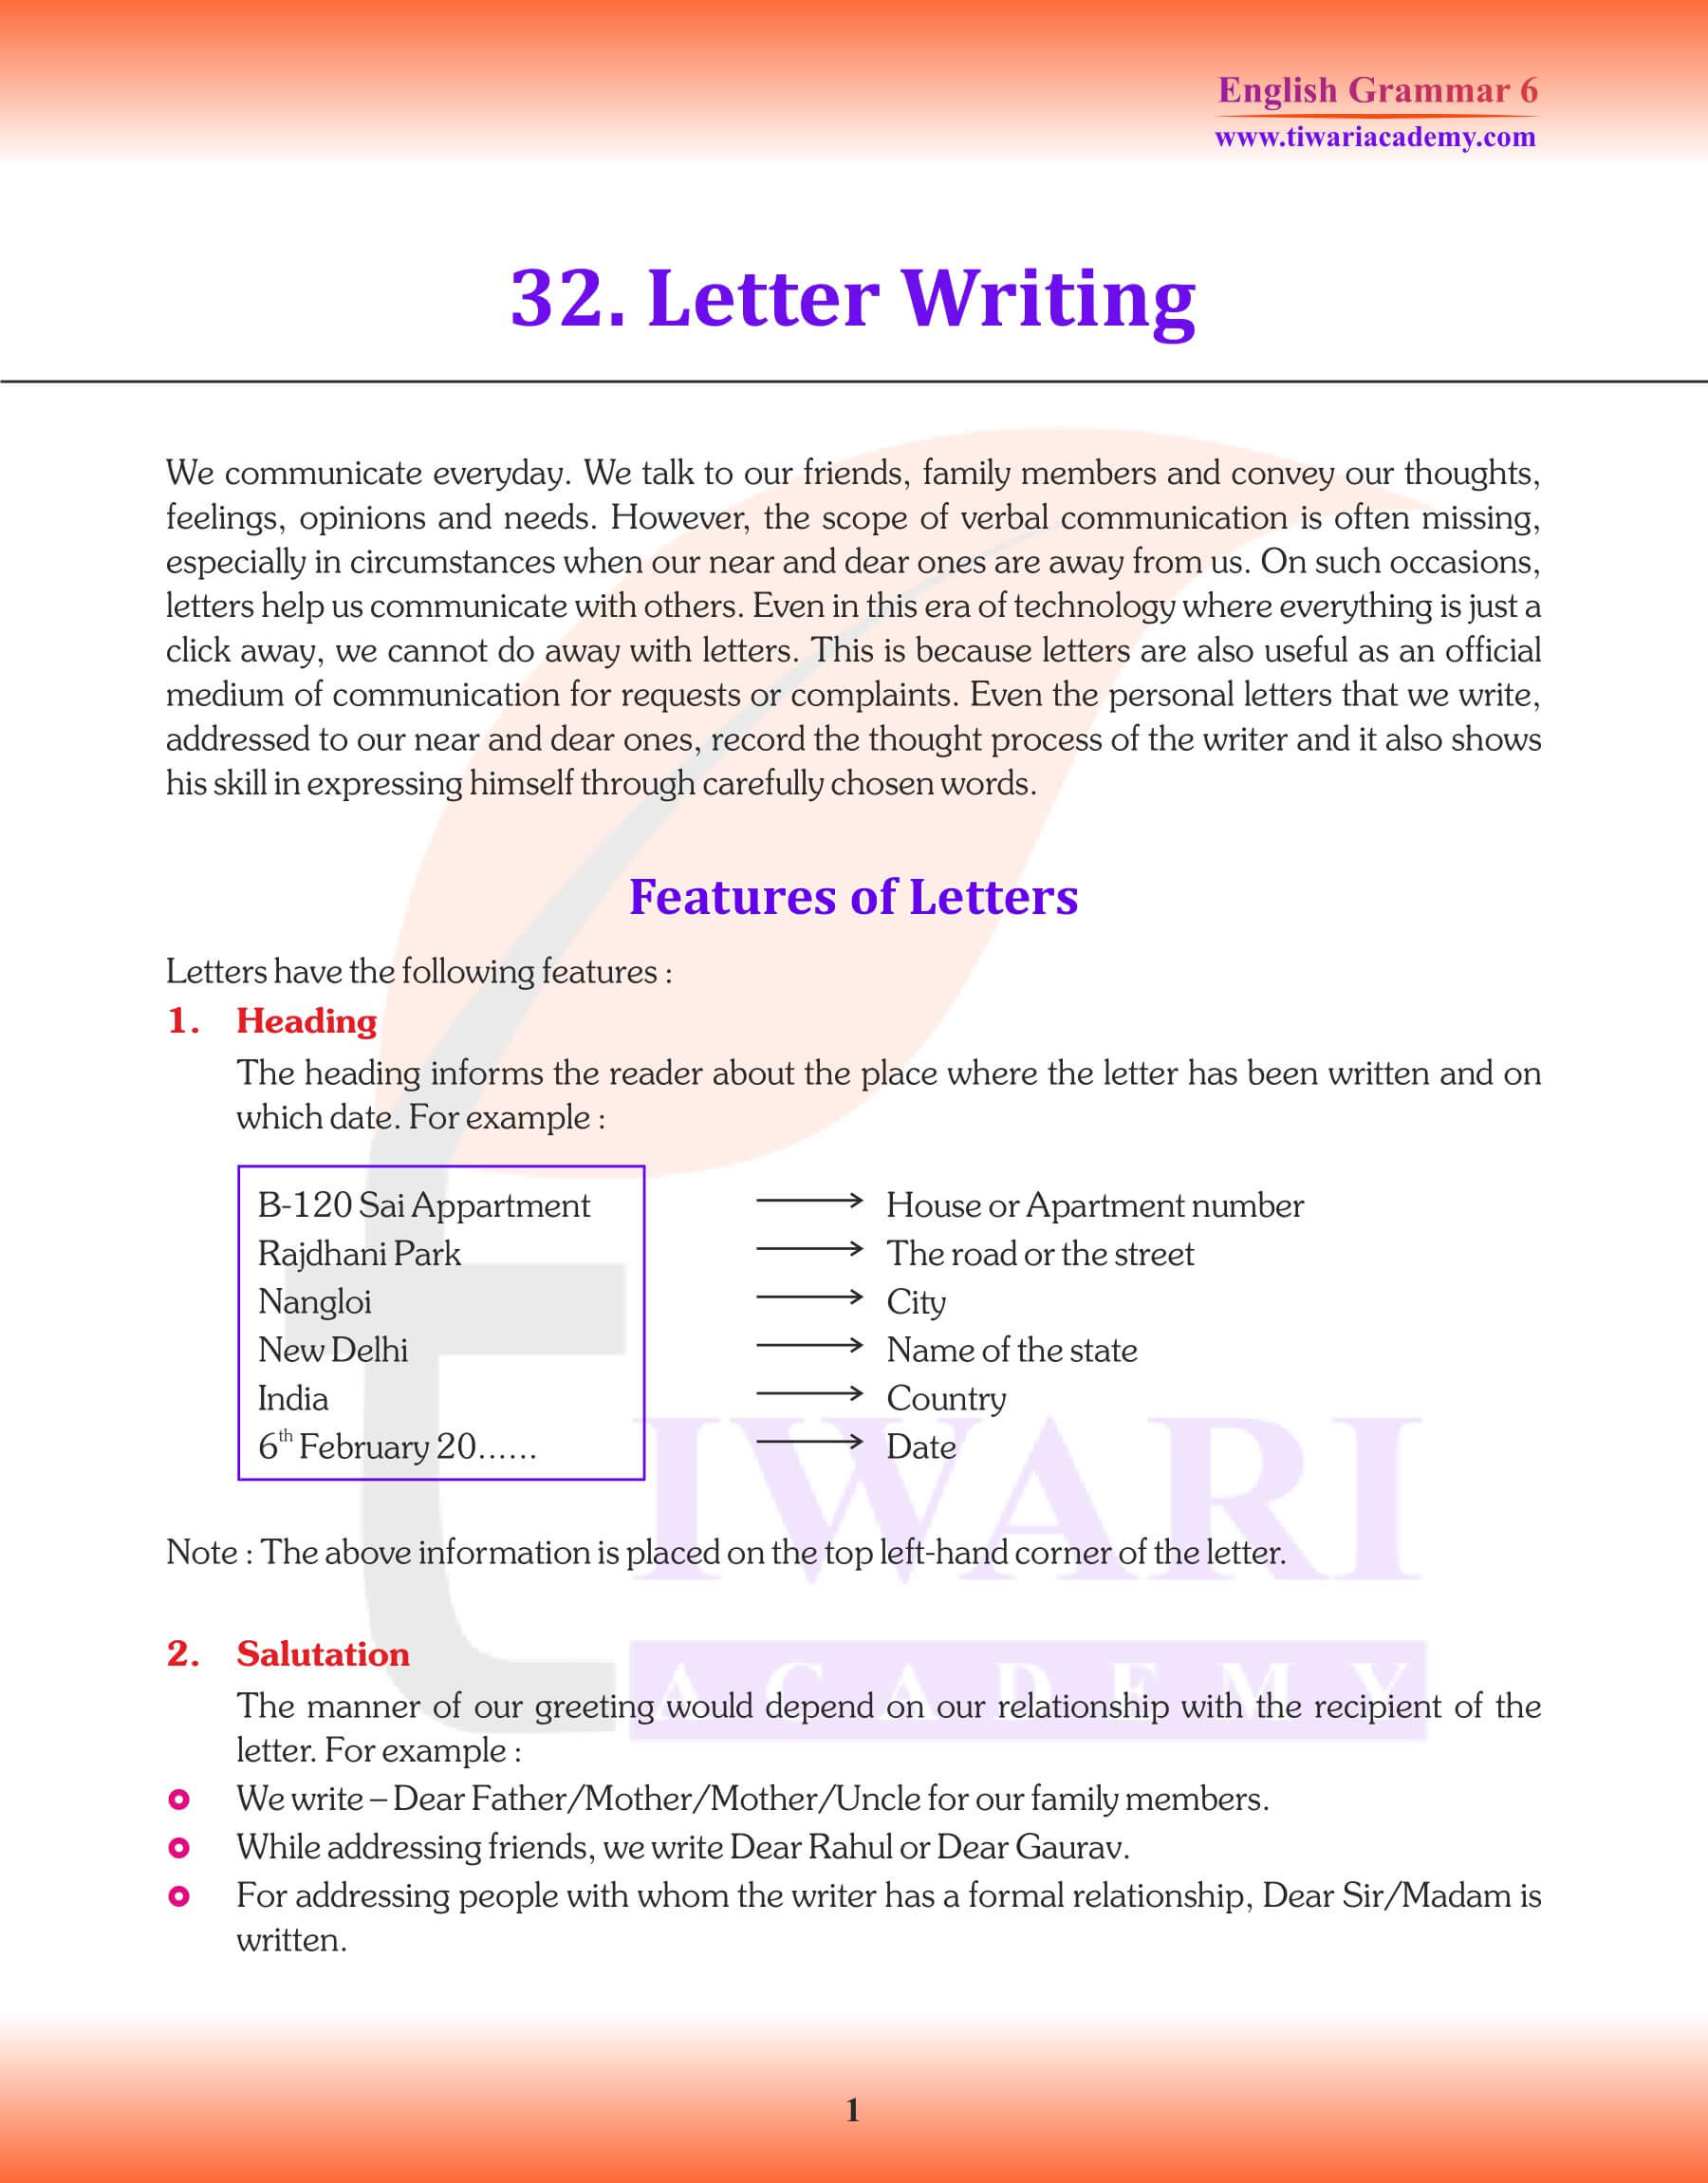 Class 6 Grammar Letter Writing